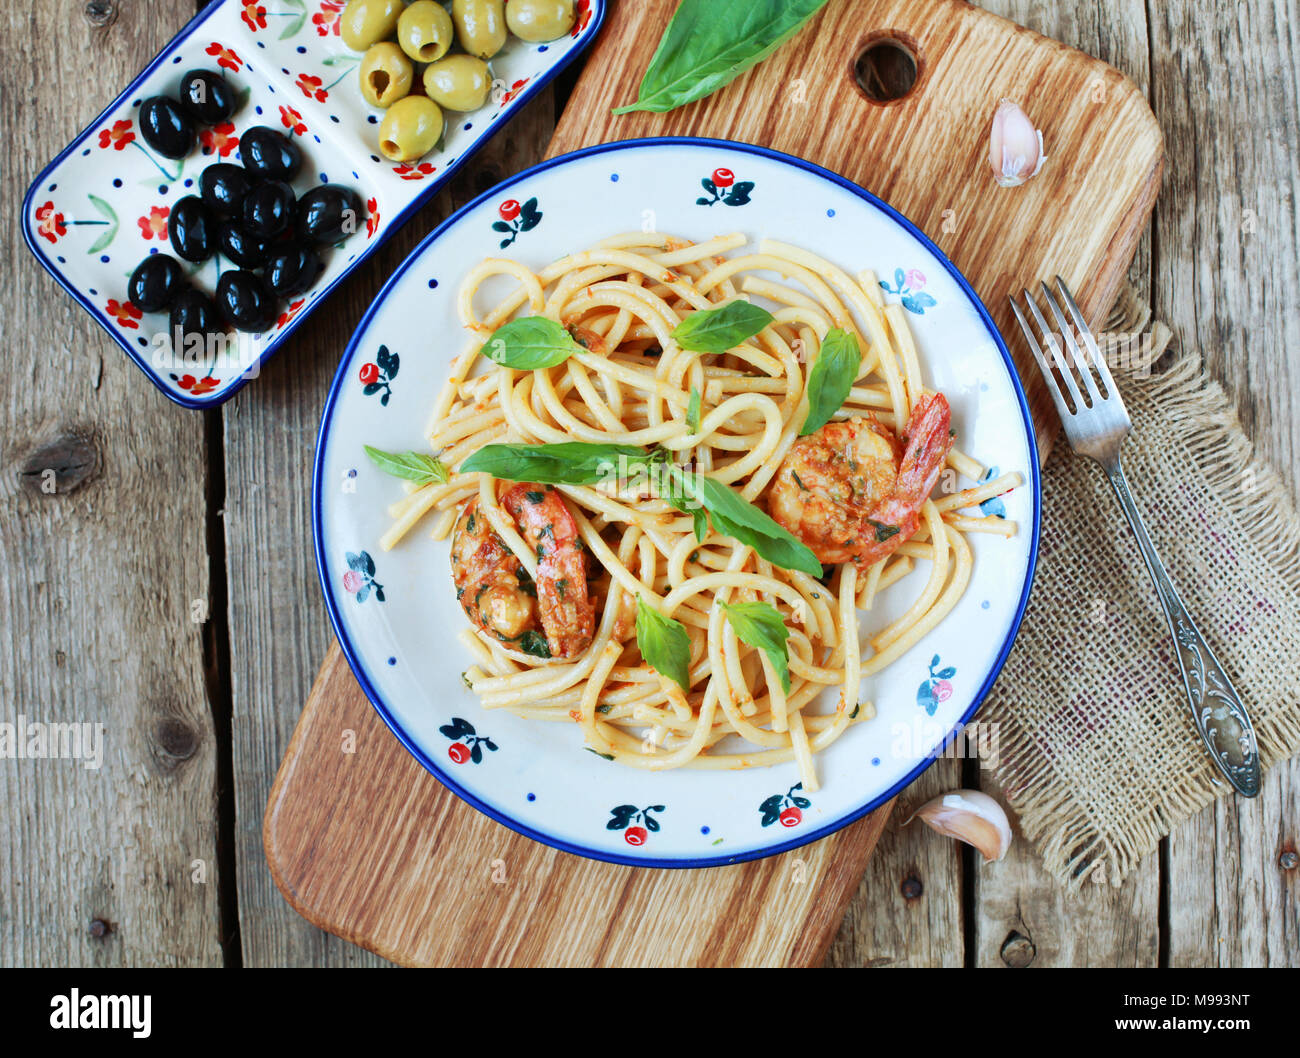 Spaghetti au pesto pâtes rÐ¾ssÐ¾, crevettes, le basilic et l'ail sur un fond de bois. Selective focus, vue du dessus. Banque D'Images